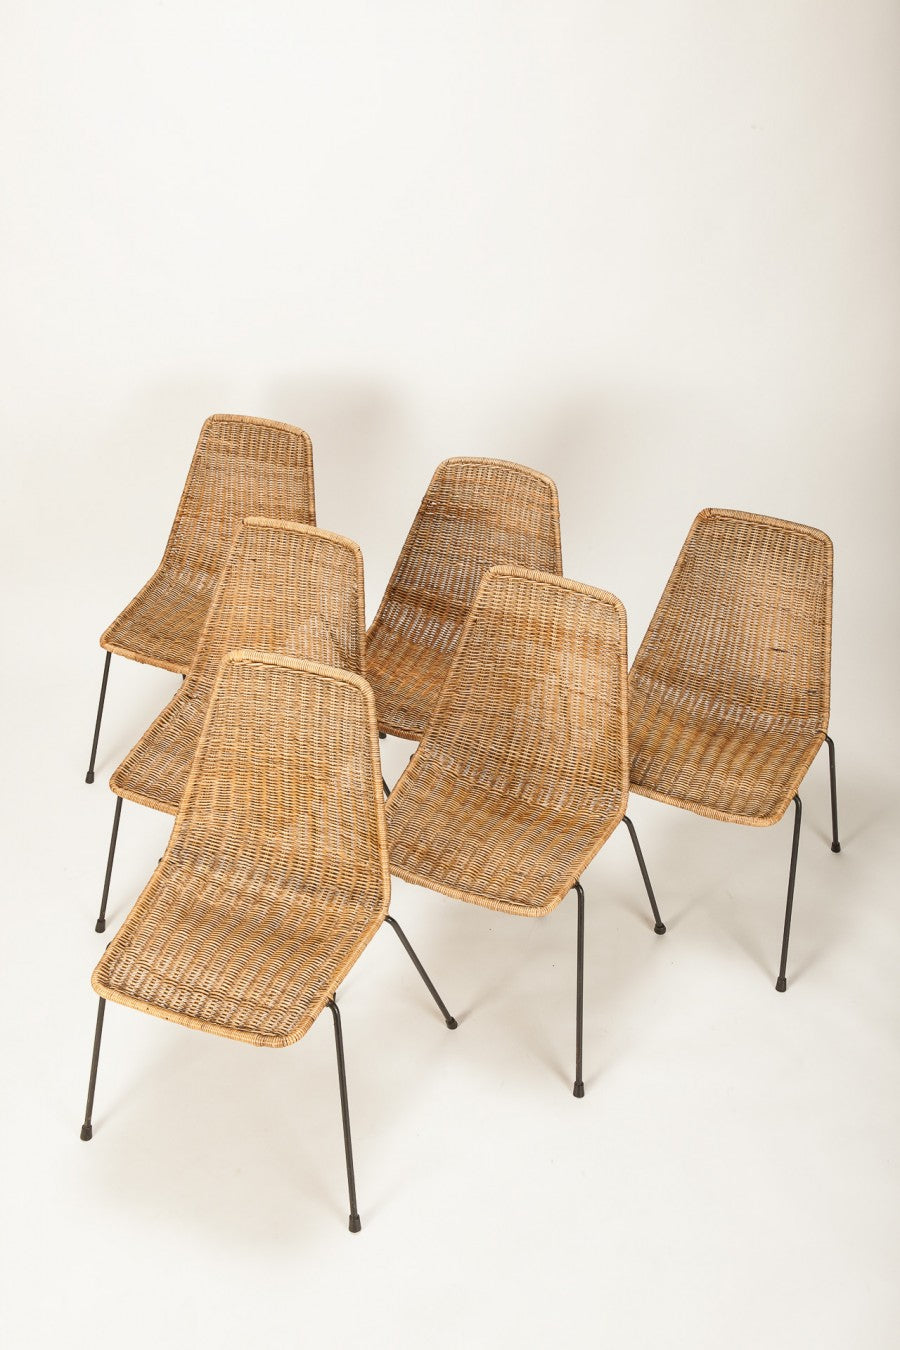 Ein Set von 6 Franco Legler Basket Stühlen von Gian Franco Legler